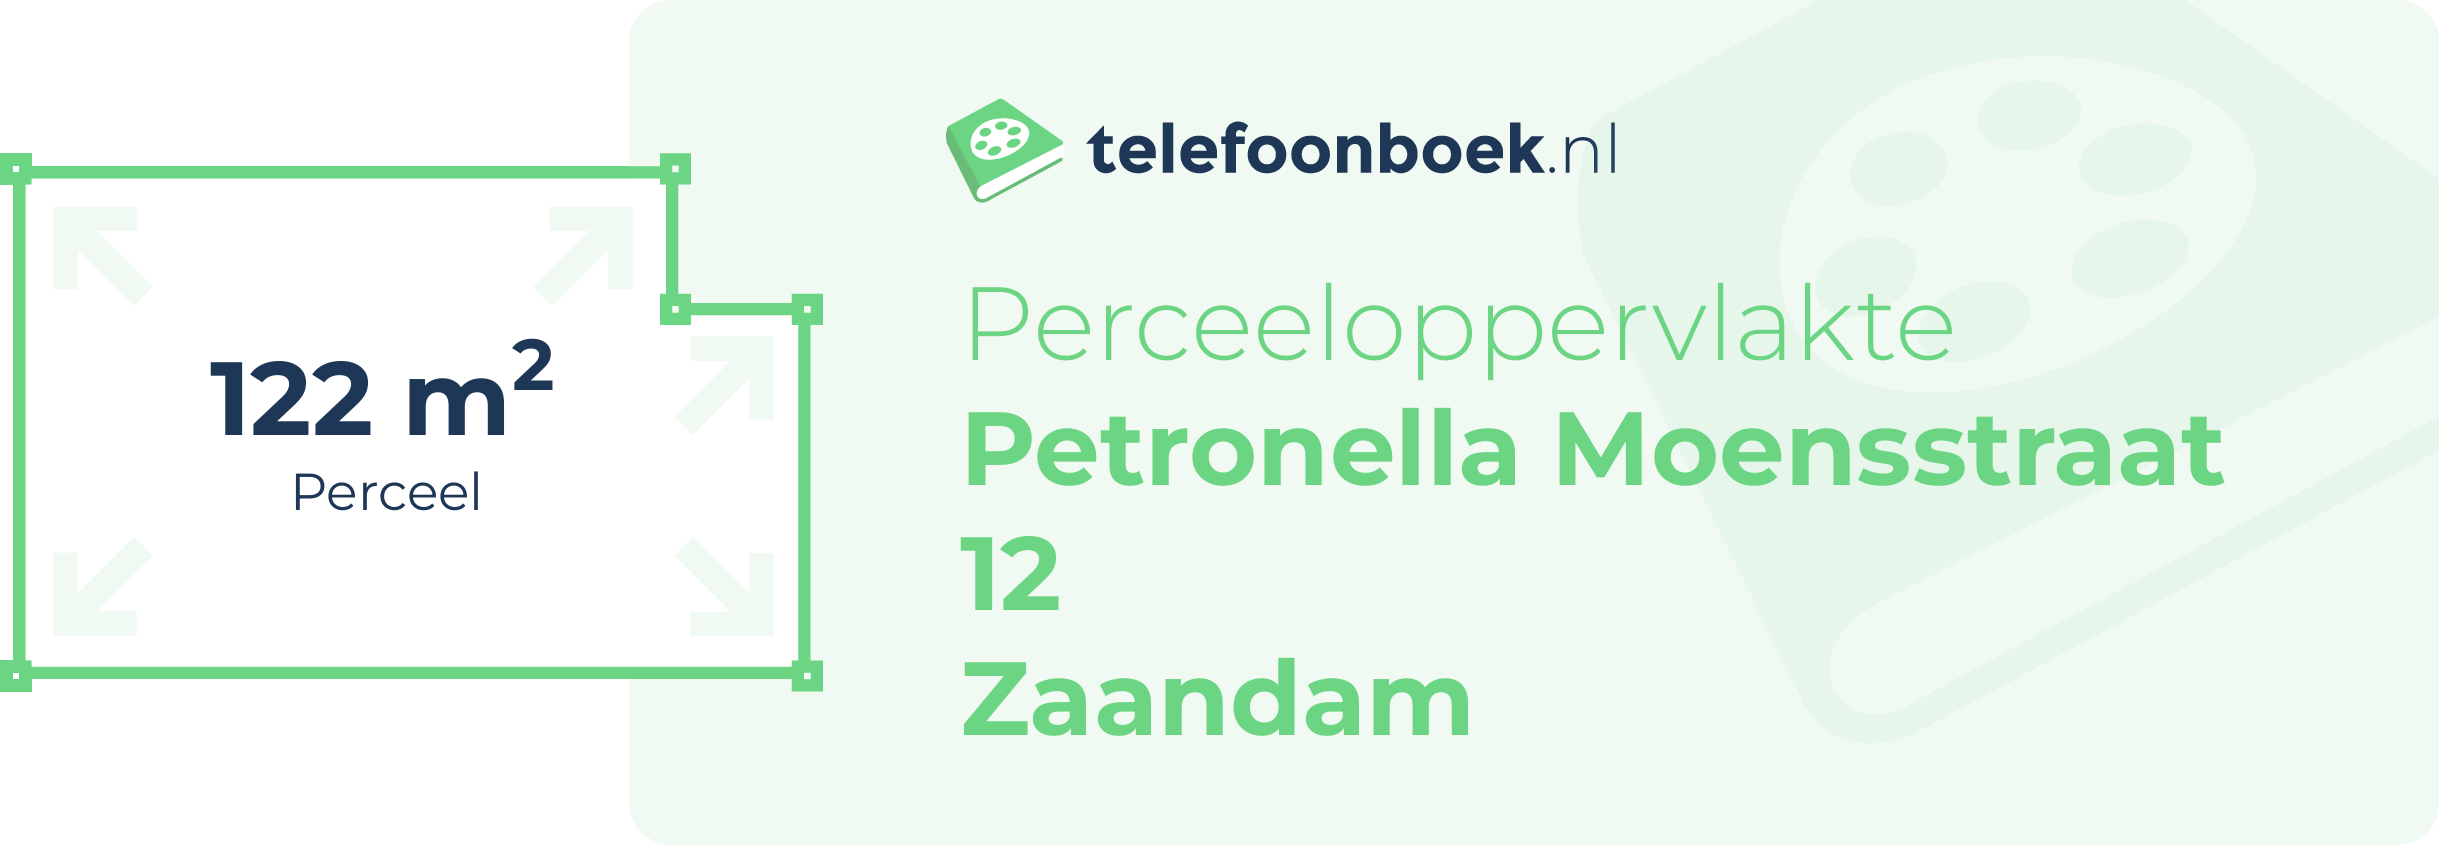 Perceeloppervlakte Petronella Moensstraat 12 Zaandam